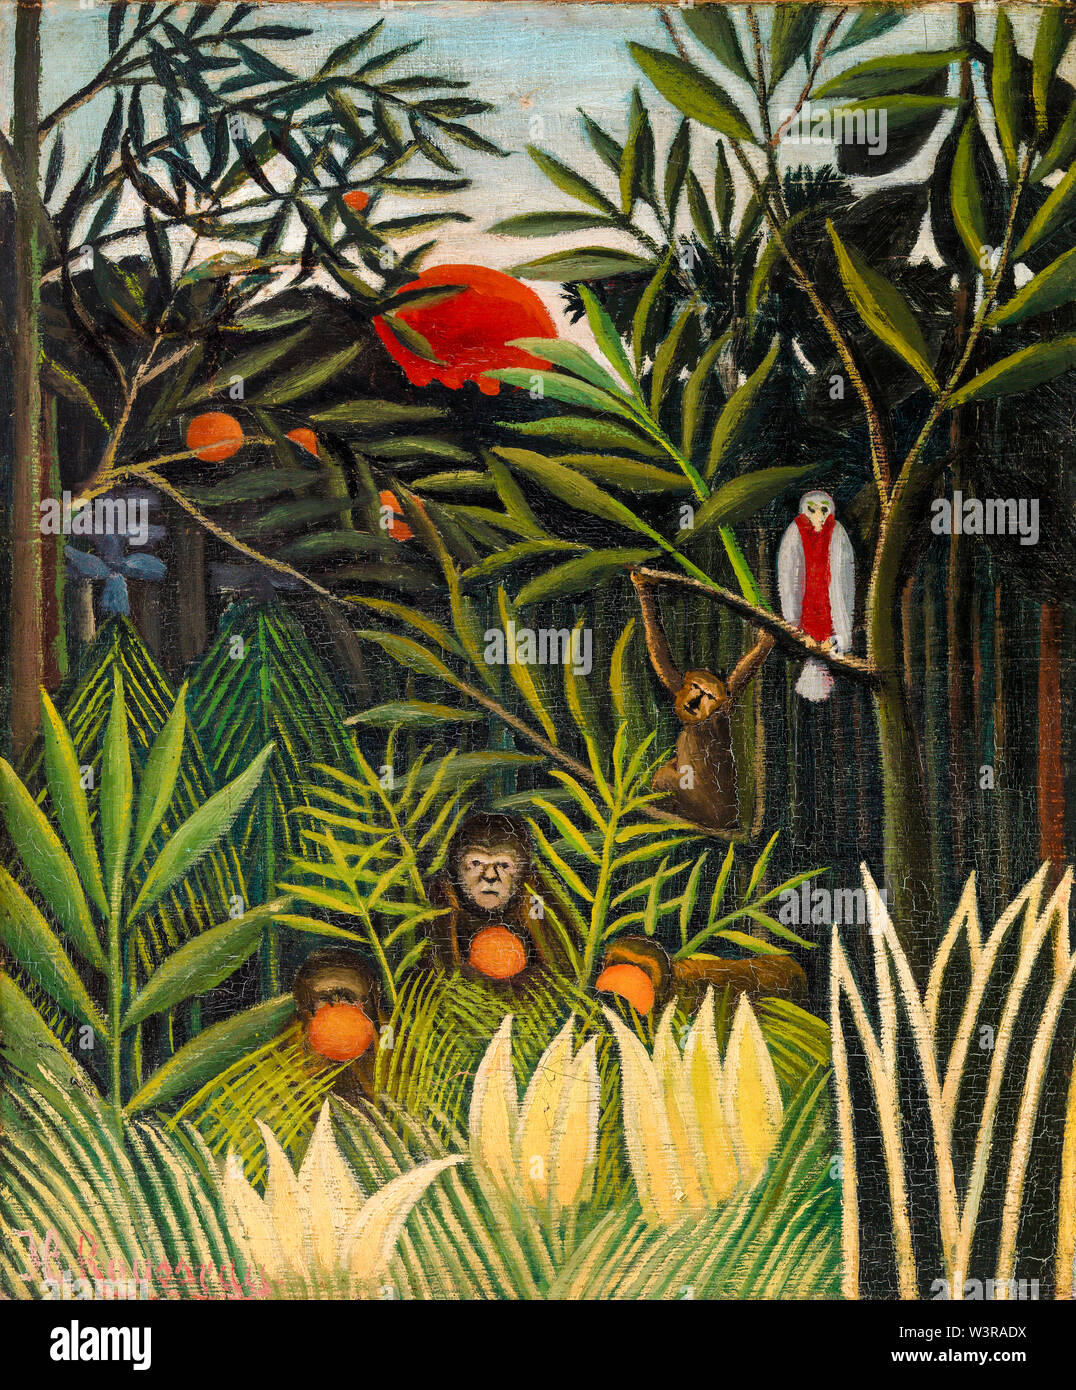 Henri Rousseau, de singes et de perroquets dans la forêt vierge, peinture, 1905-1906 Banque D'Images